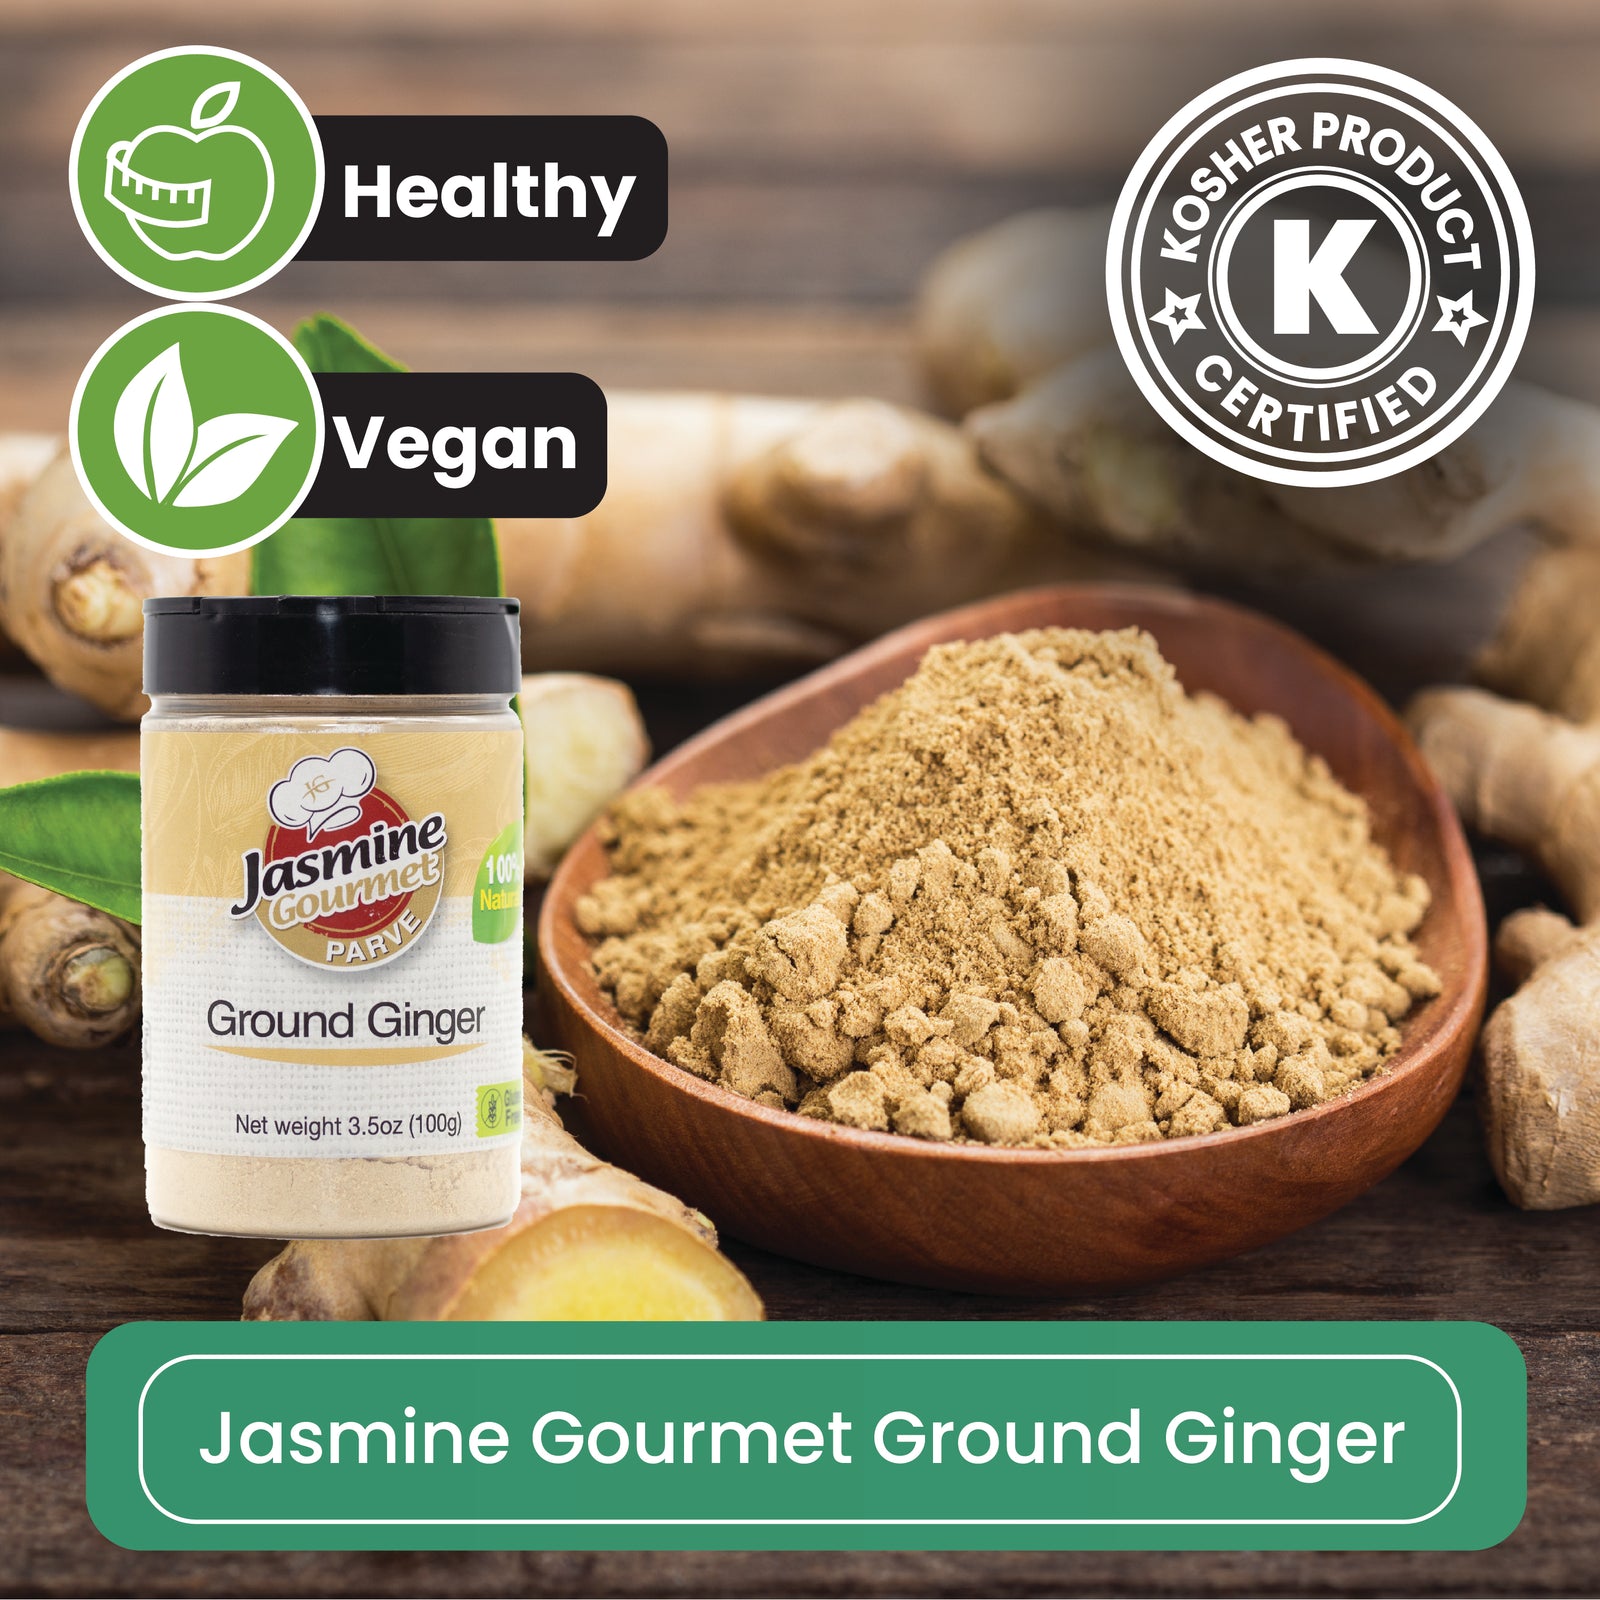 Jasmine Gourmet Ground Ginger